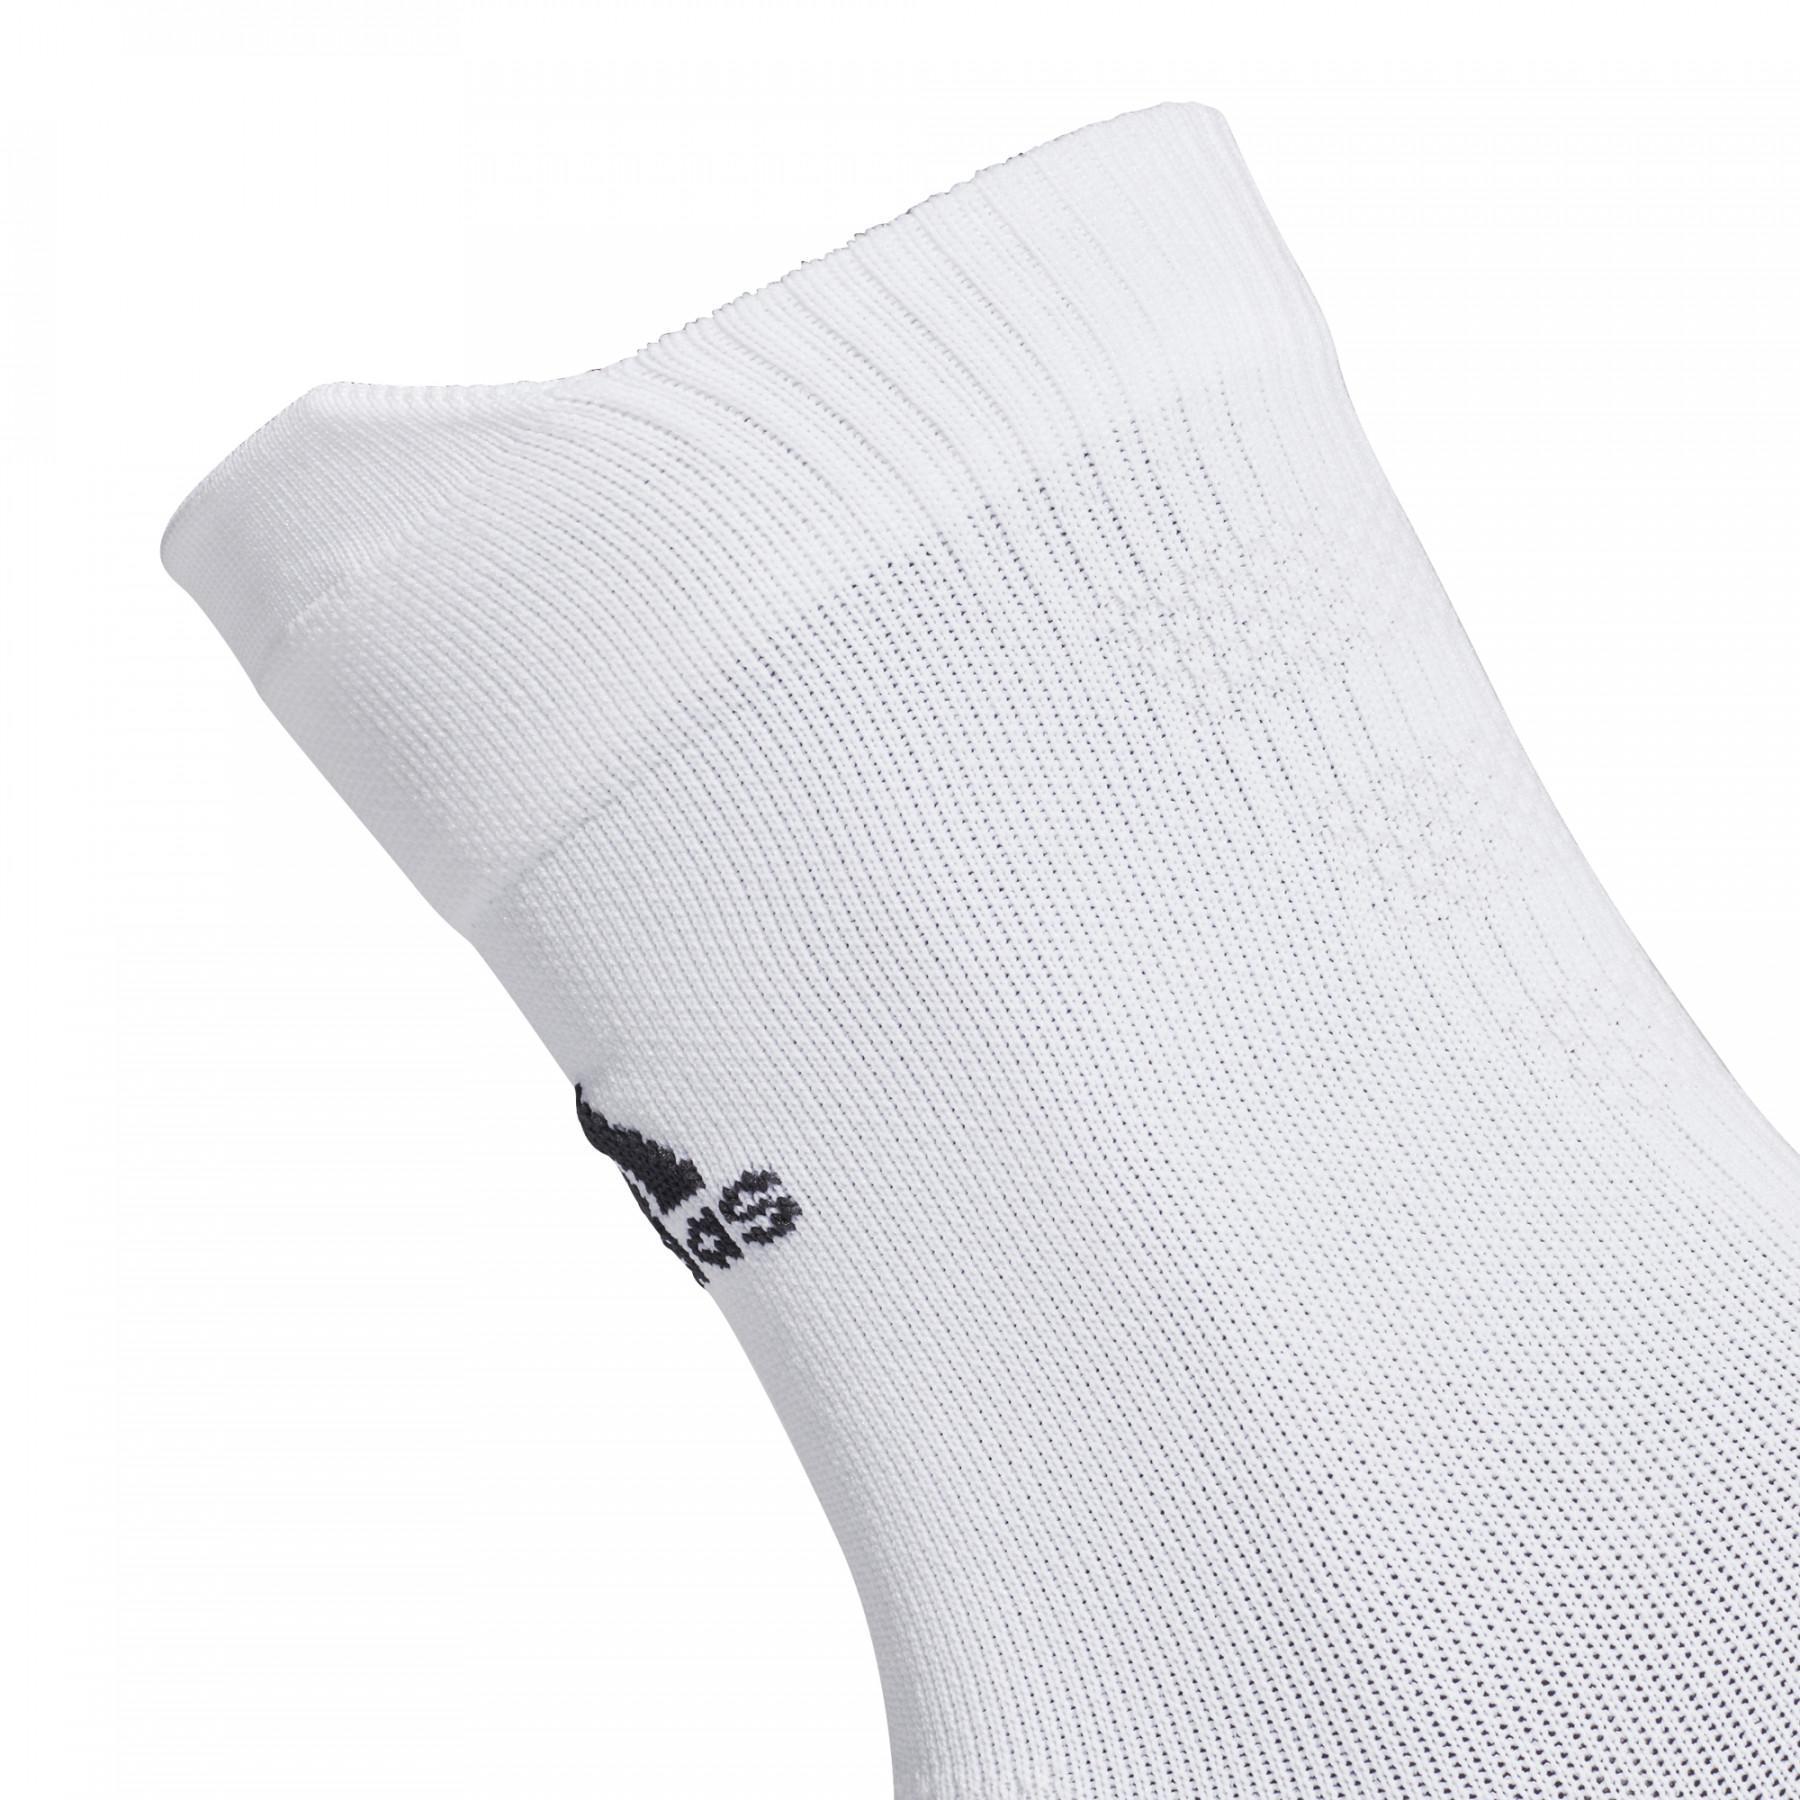 Socks adidas mi-mollet Alphaskin Traxion Ultralight